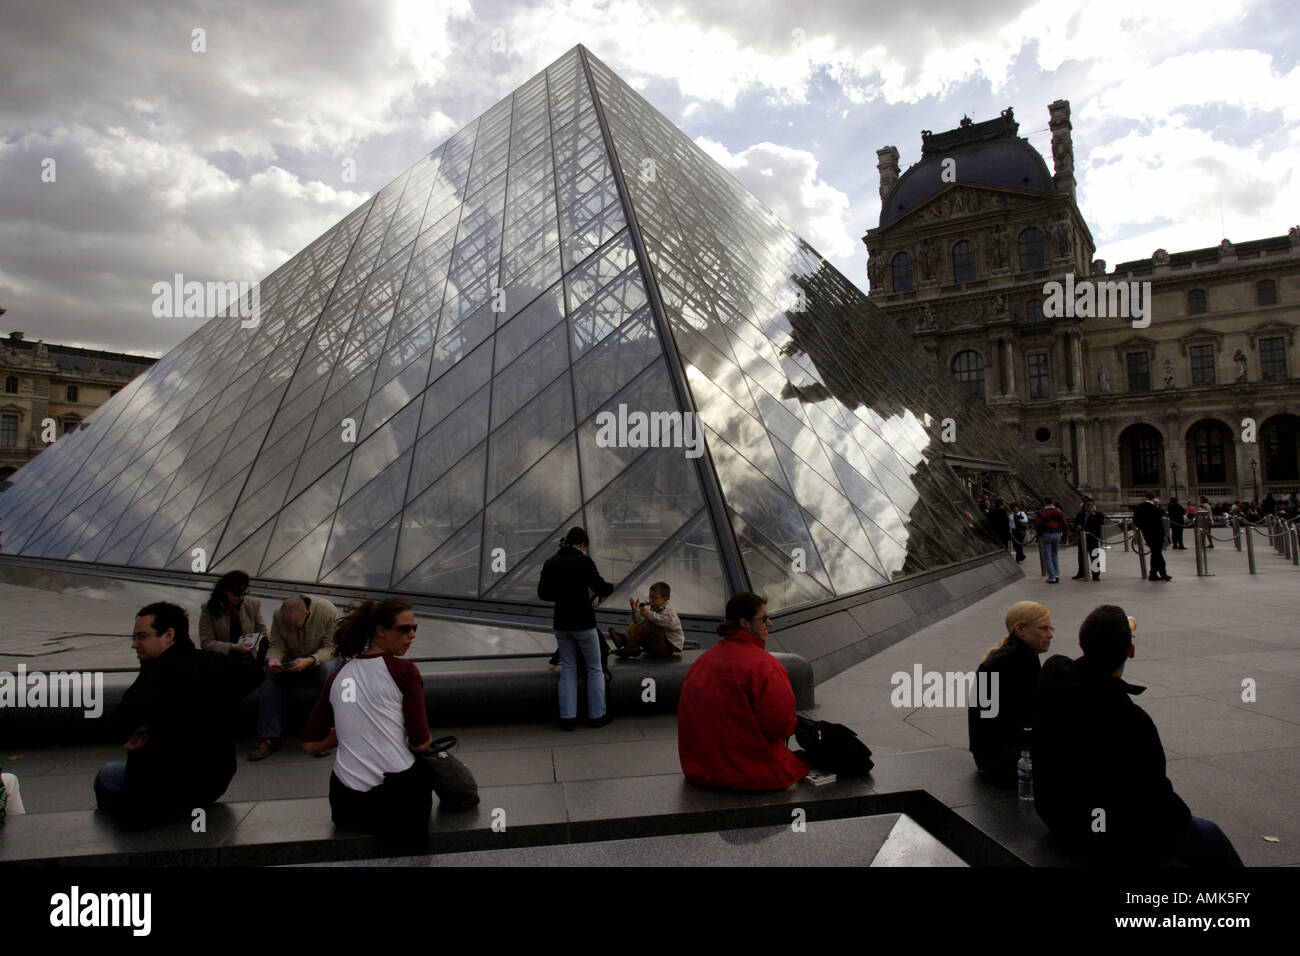 La pyramide du Louvre en face de l'entrée principale du musée du Louvre, Paris, France Banque D'Images